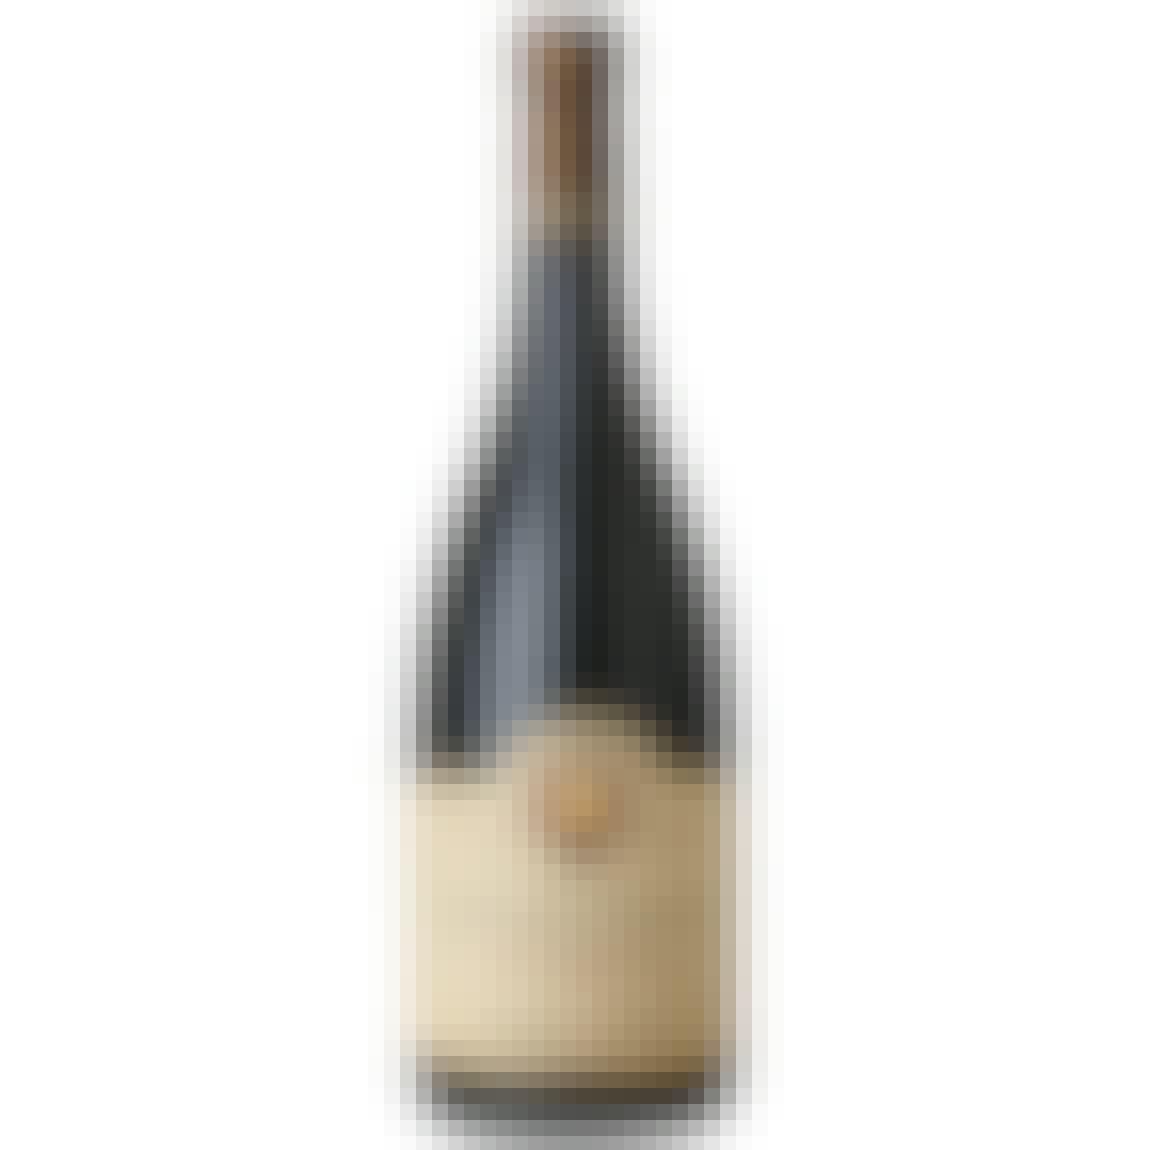 Domaine Ponsot Clos de la Roche Cuvée Vieilles Vignes 2017 750ml